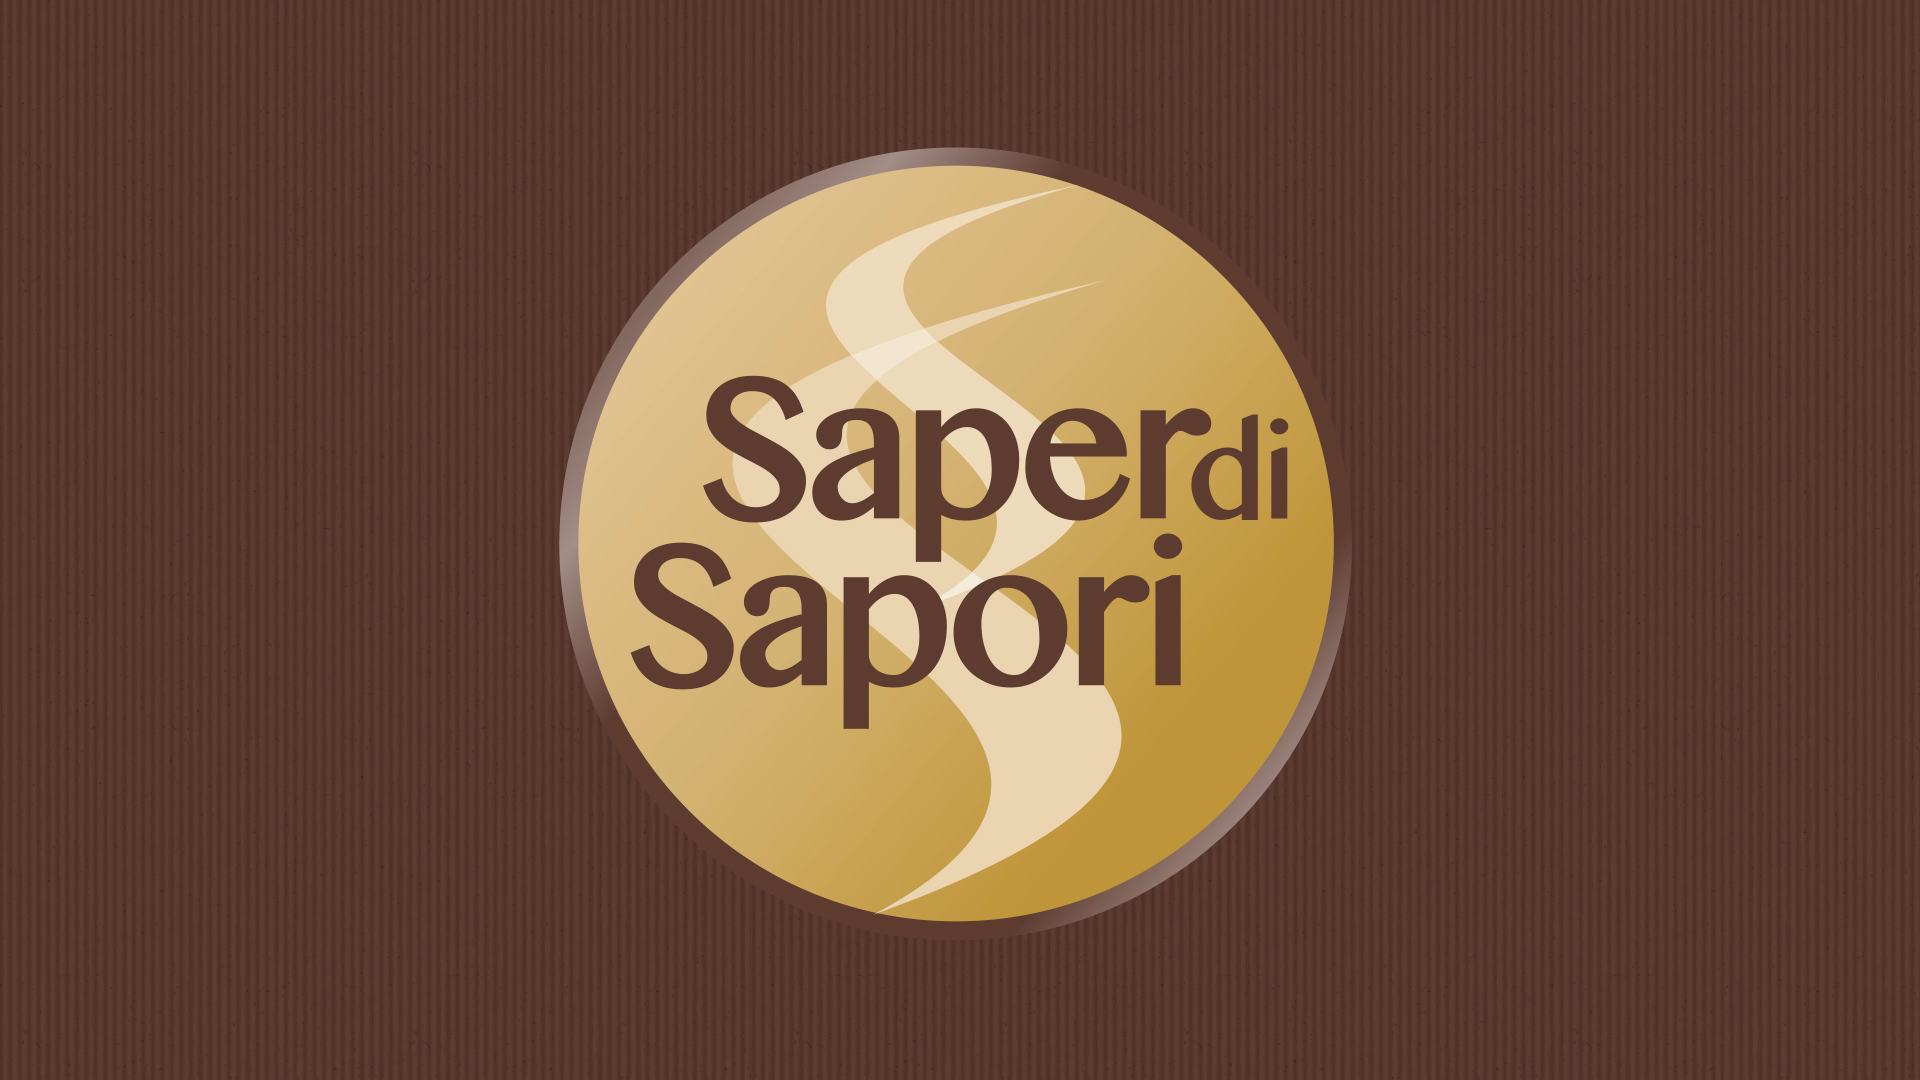 Saper di Sapori Rossetti Brand Design logo 1a